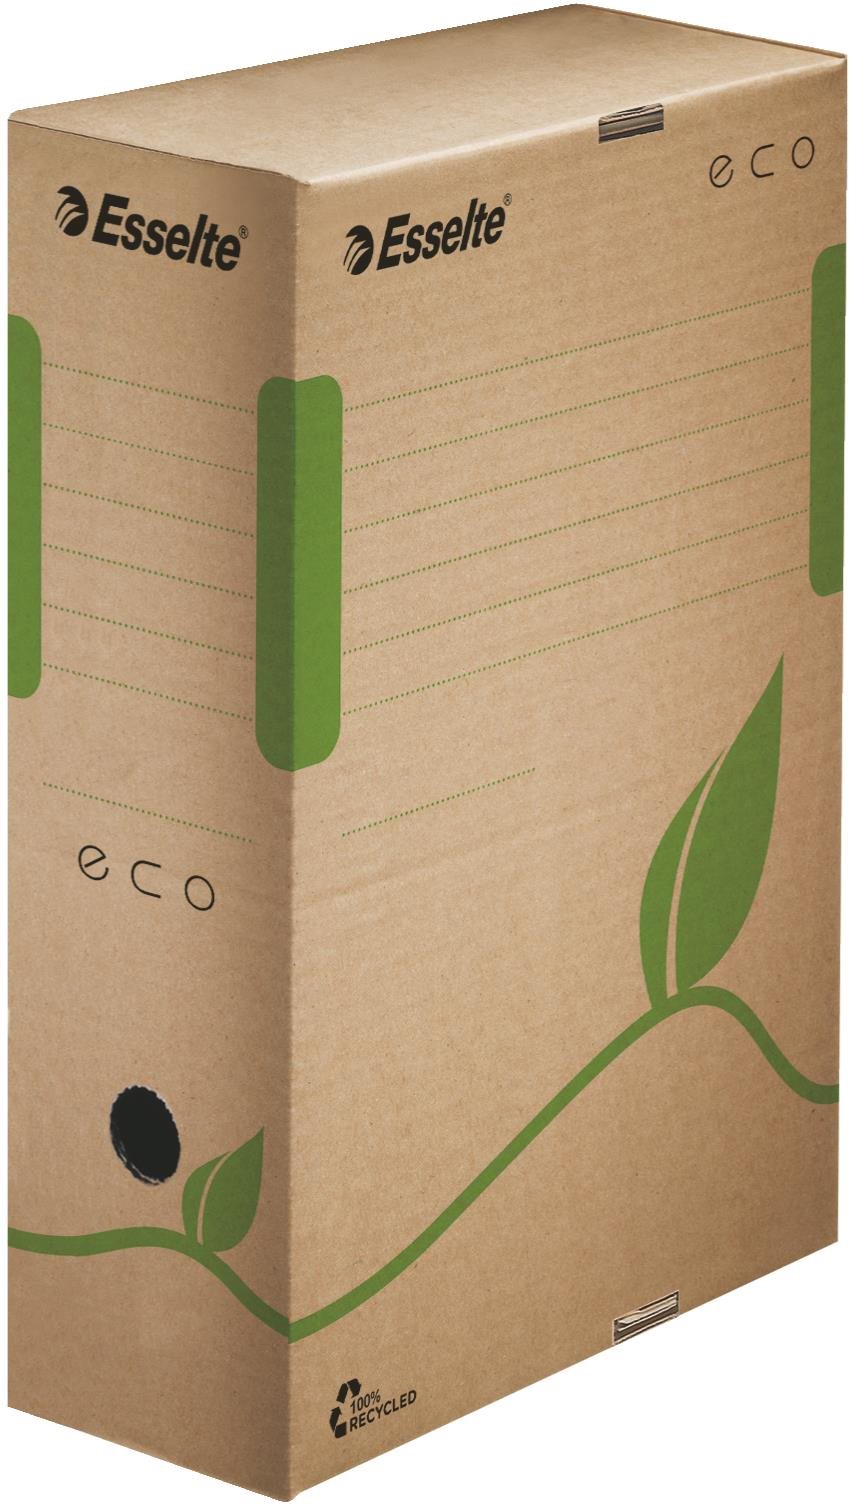 Esselte ECO 10 x 32.7 x 23.3 cm, barna-zöld